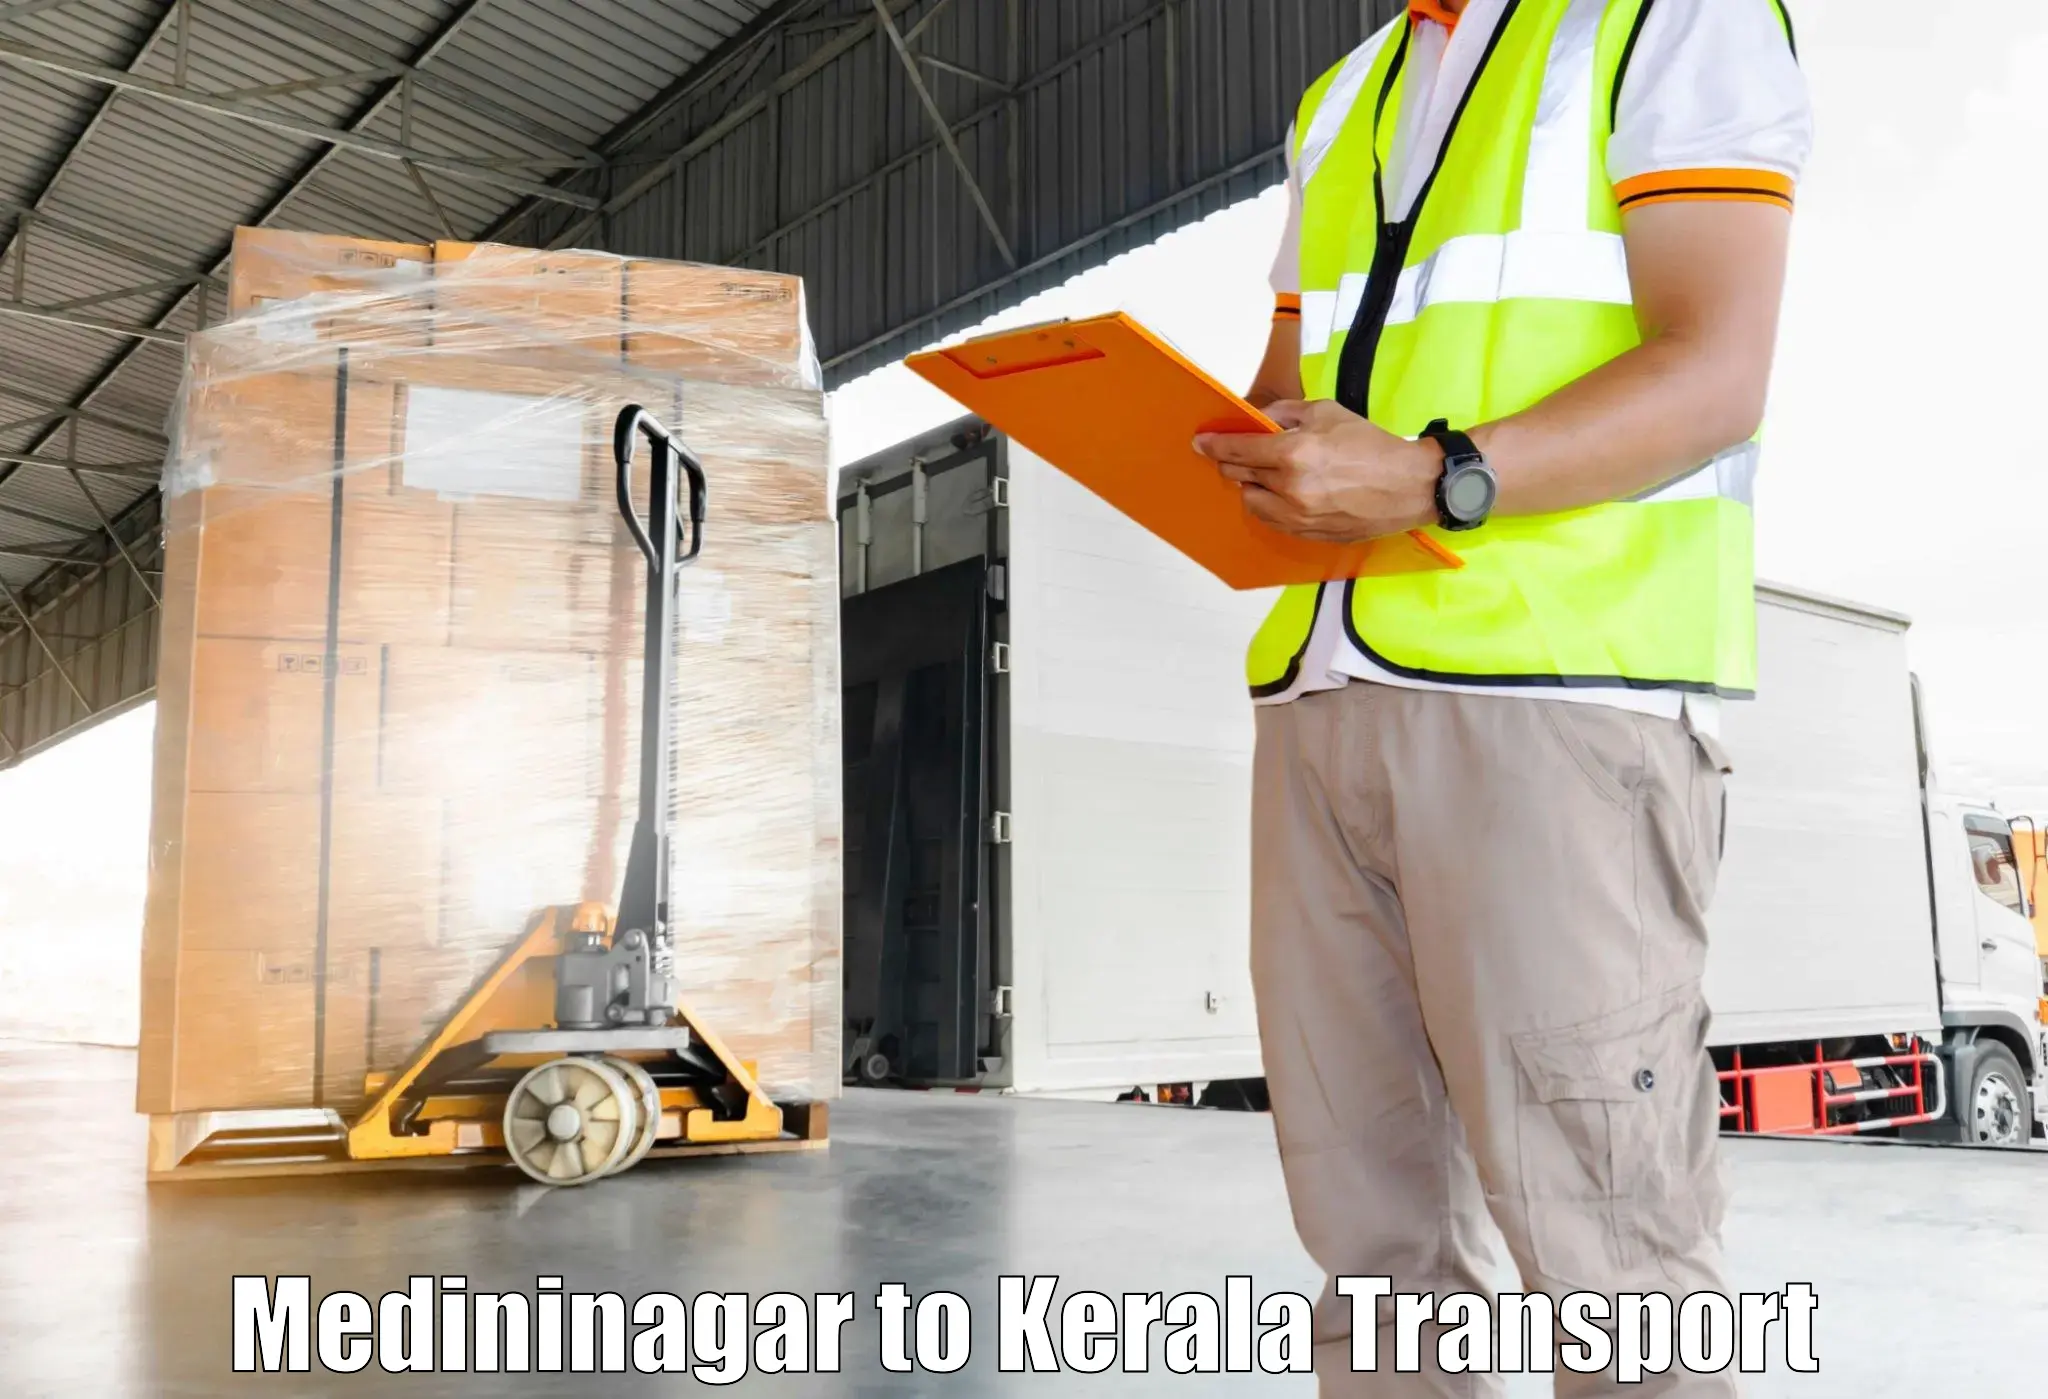 Best transport services in India Medininagar to Kottarakkara